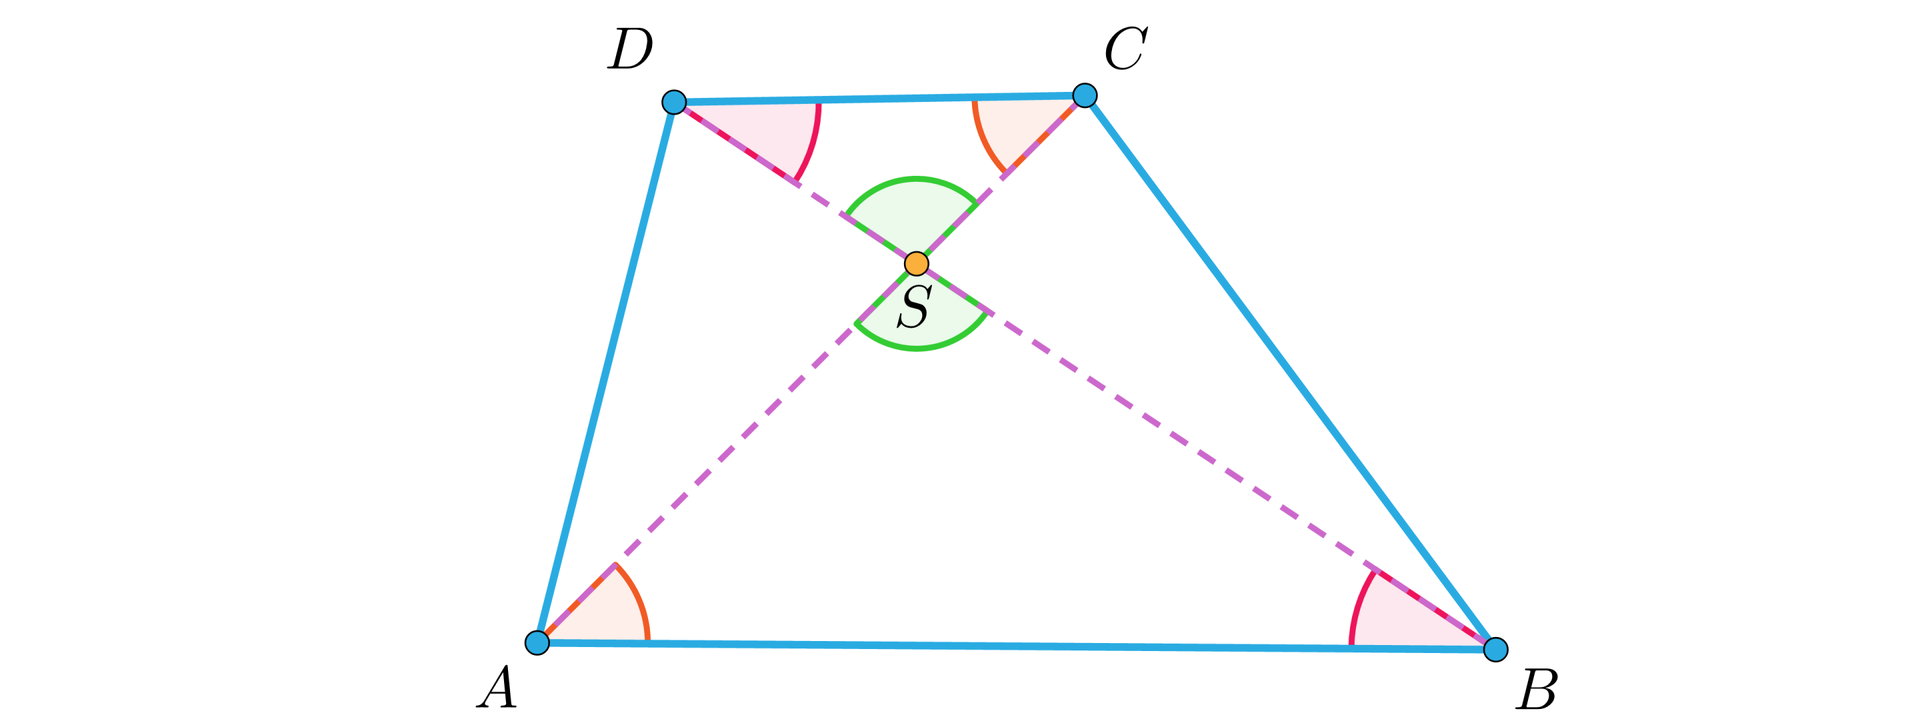 Ilustracja przedstawia trapez A B C D w którym poprowadzono przekątne A C oraz B D przecinające się w punkcie S. A B jest dolną podstawa, a D C górną. Zaznaczono następujące kąty: kąt A S B oraz D S C są równe. Kąty B D C oraz D B A są równe. Kąty A C D oraz C A B są równe.